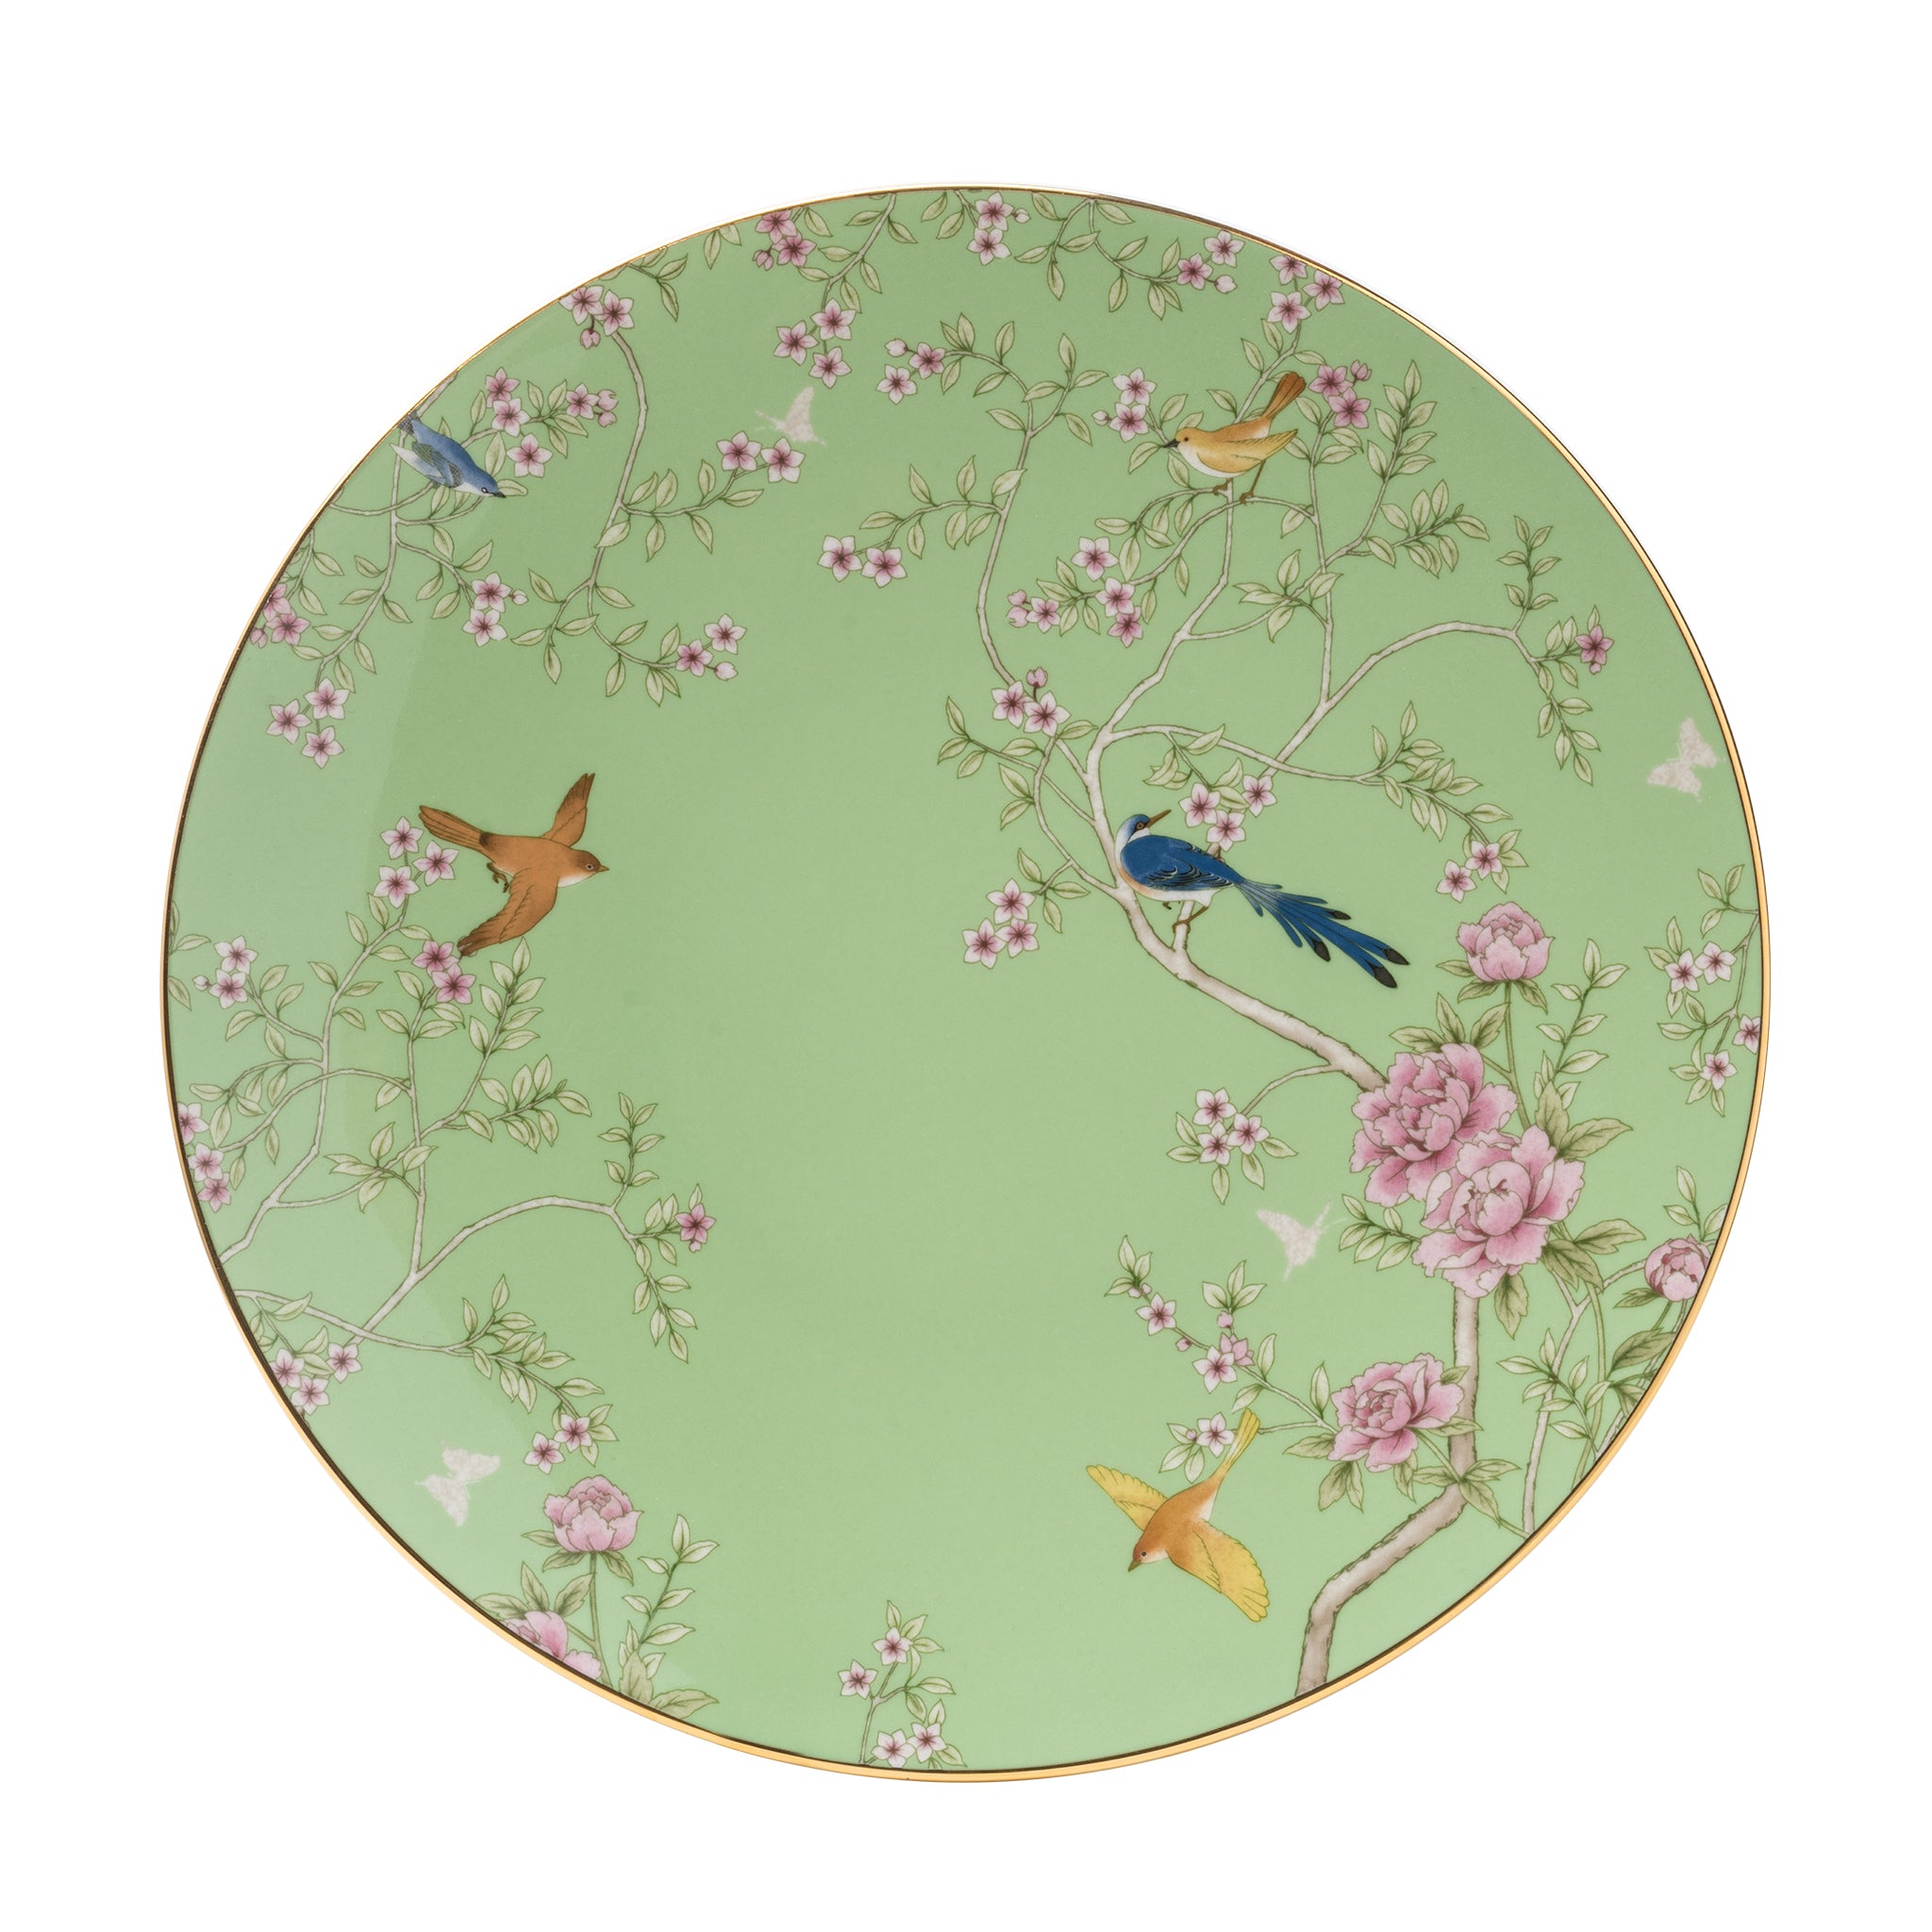 narumi queen's garden green 28cm plate plates 